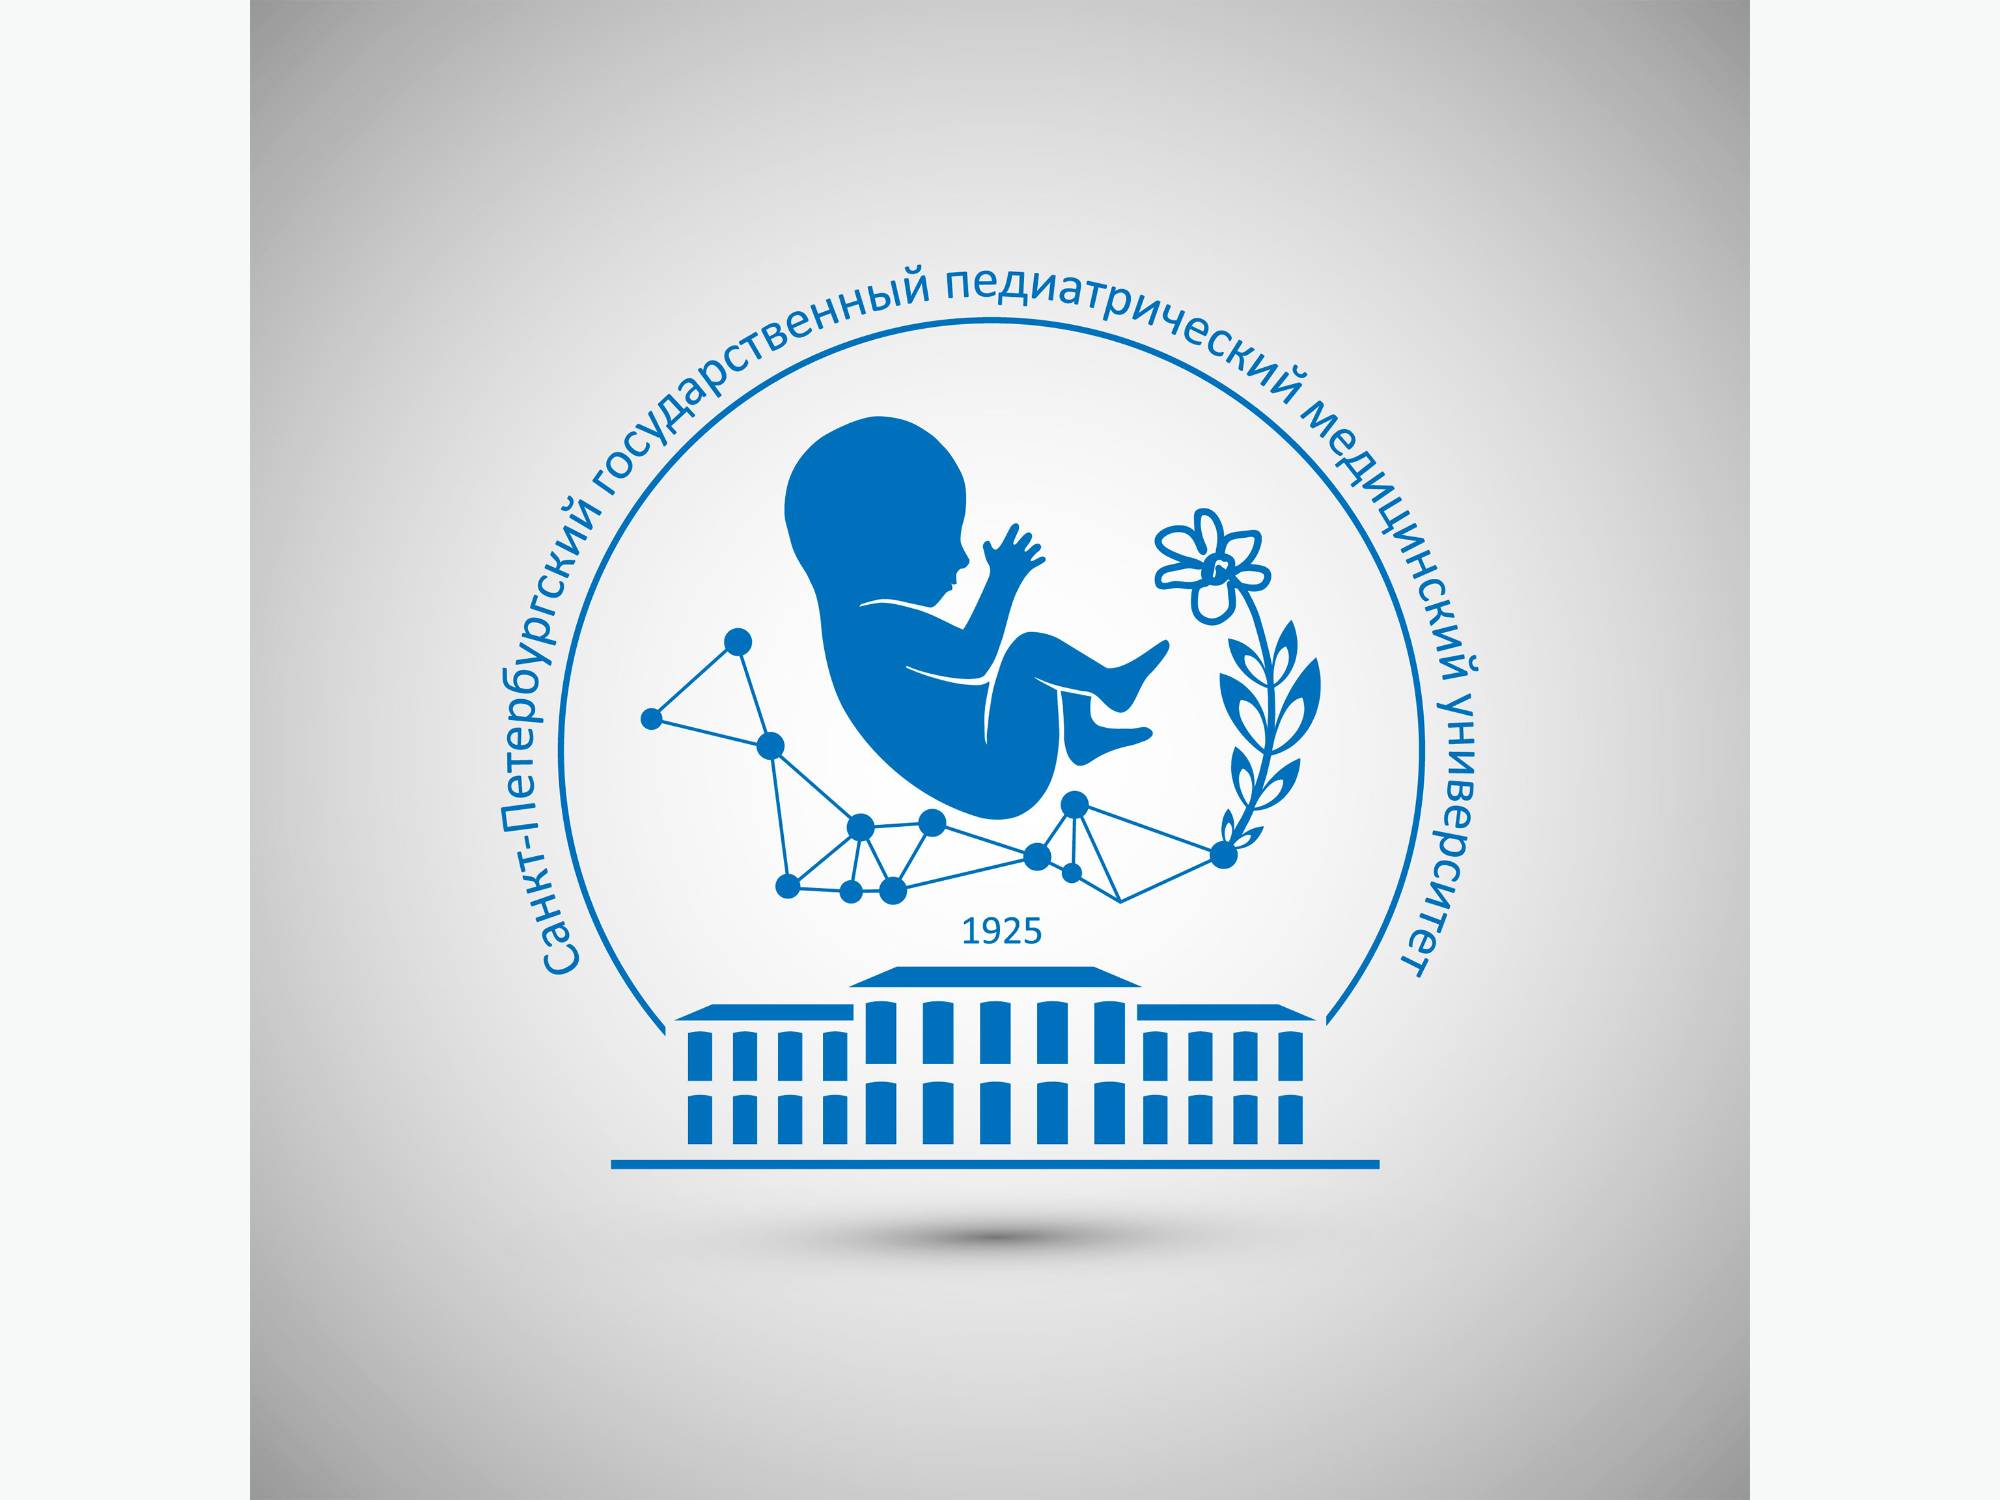 Логотип и фирменная айдентика для СПбГПМУ